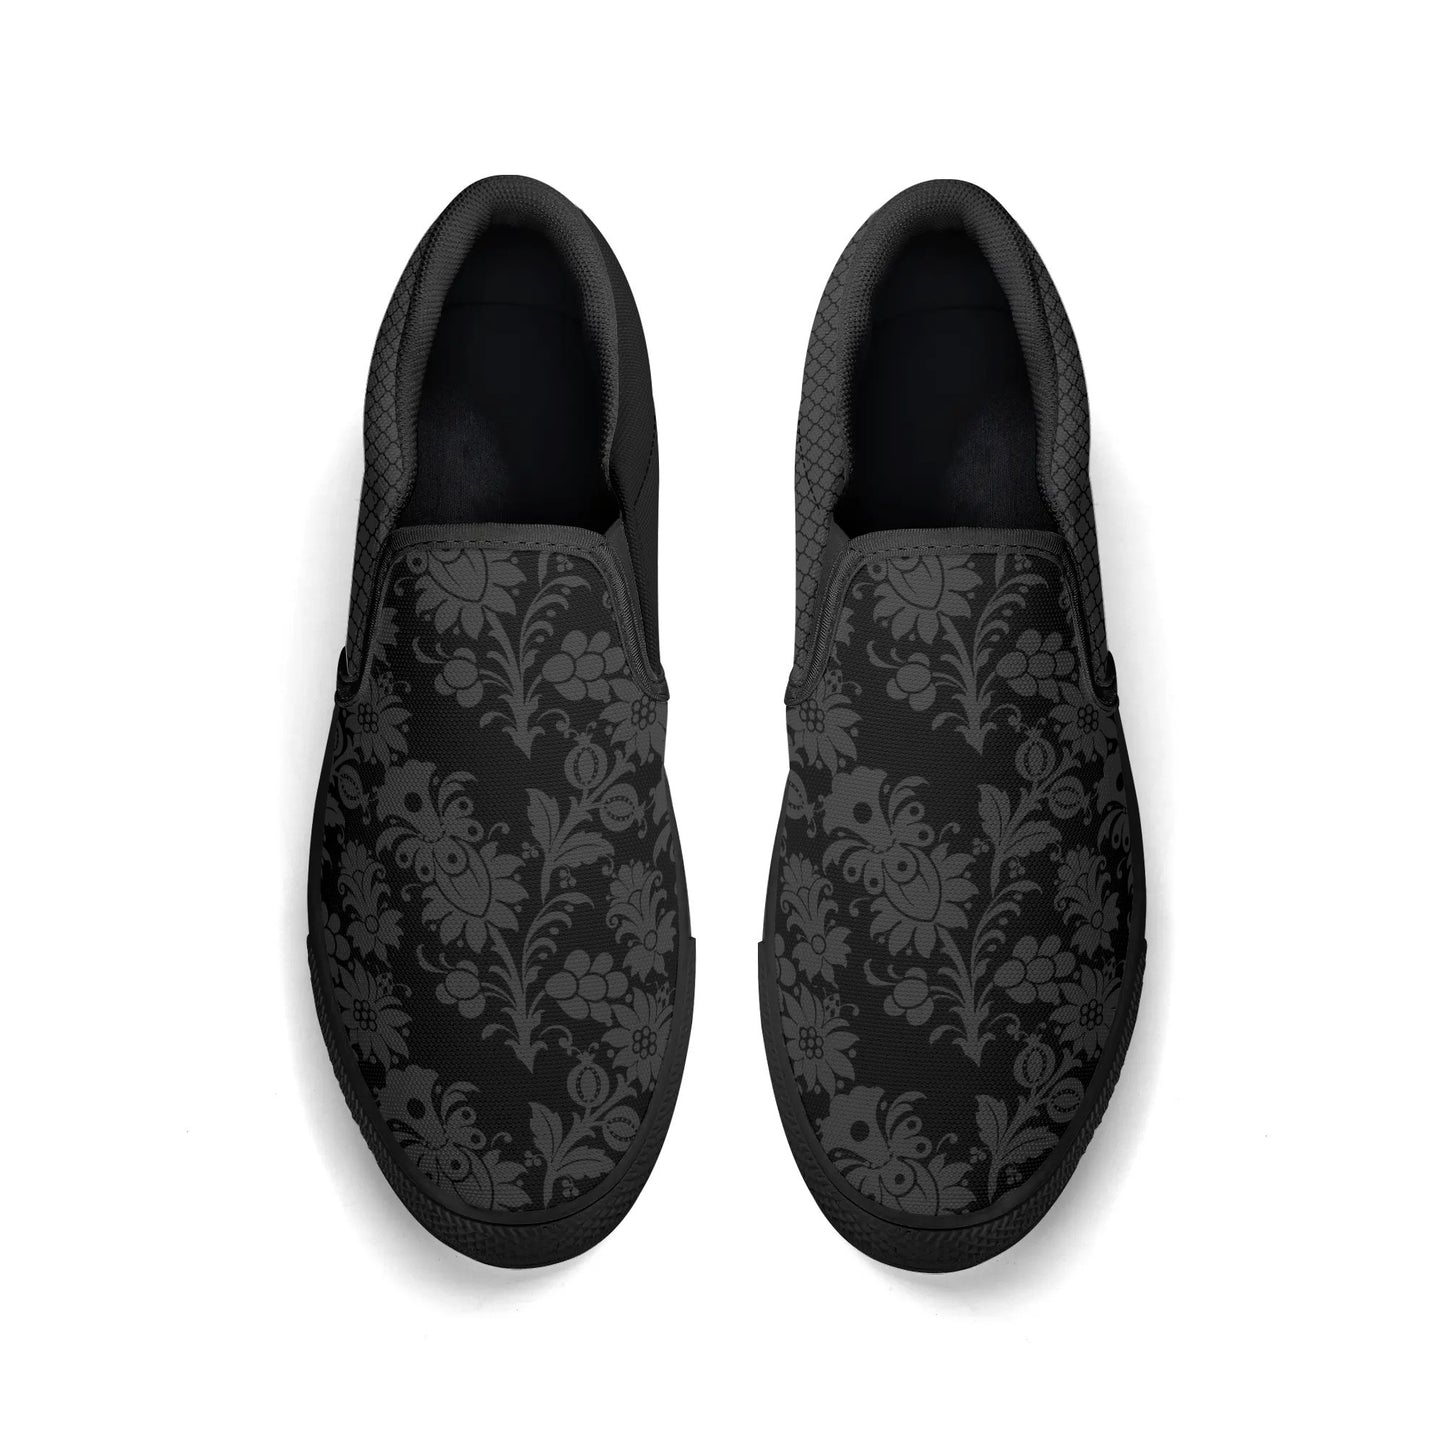 Dorian Gray Women's Slip On Shoes